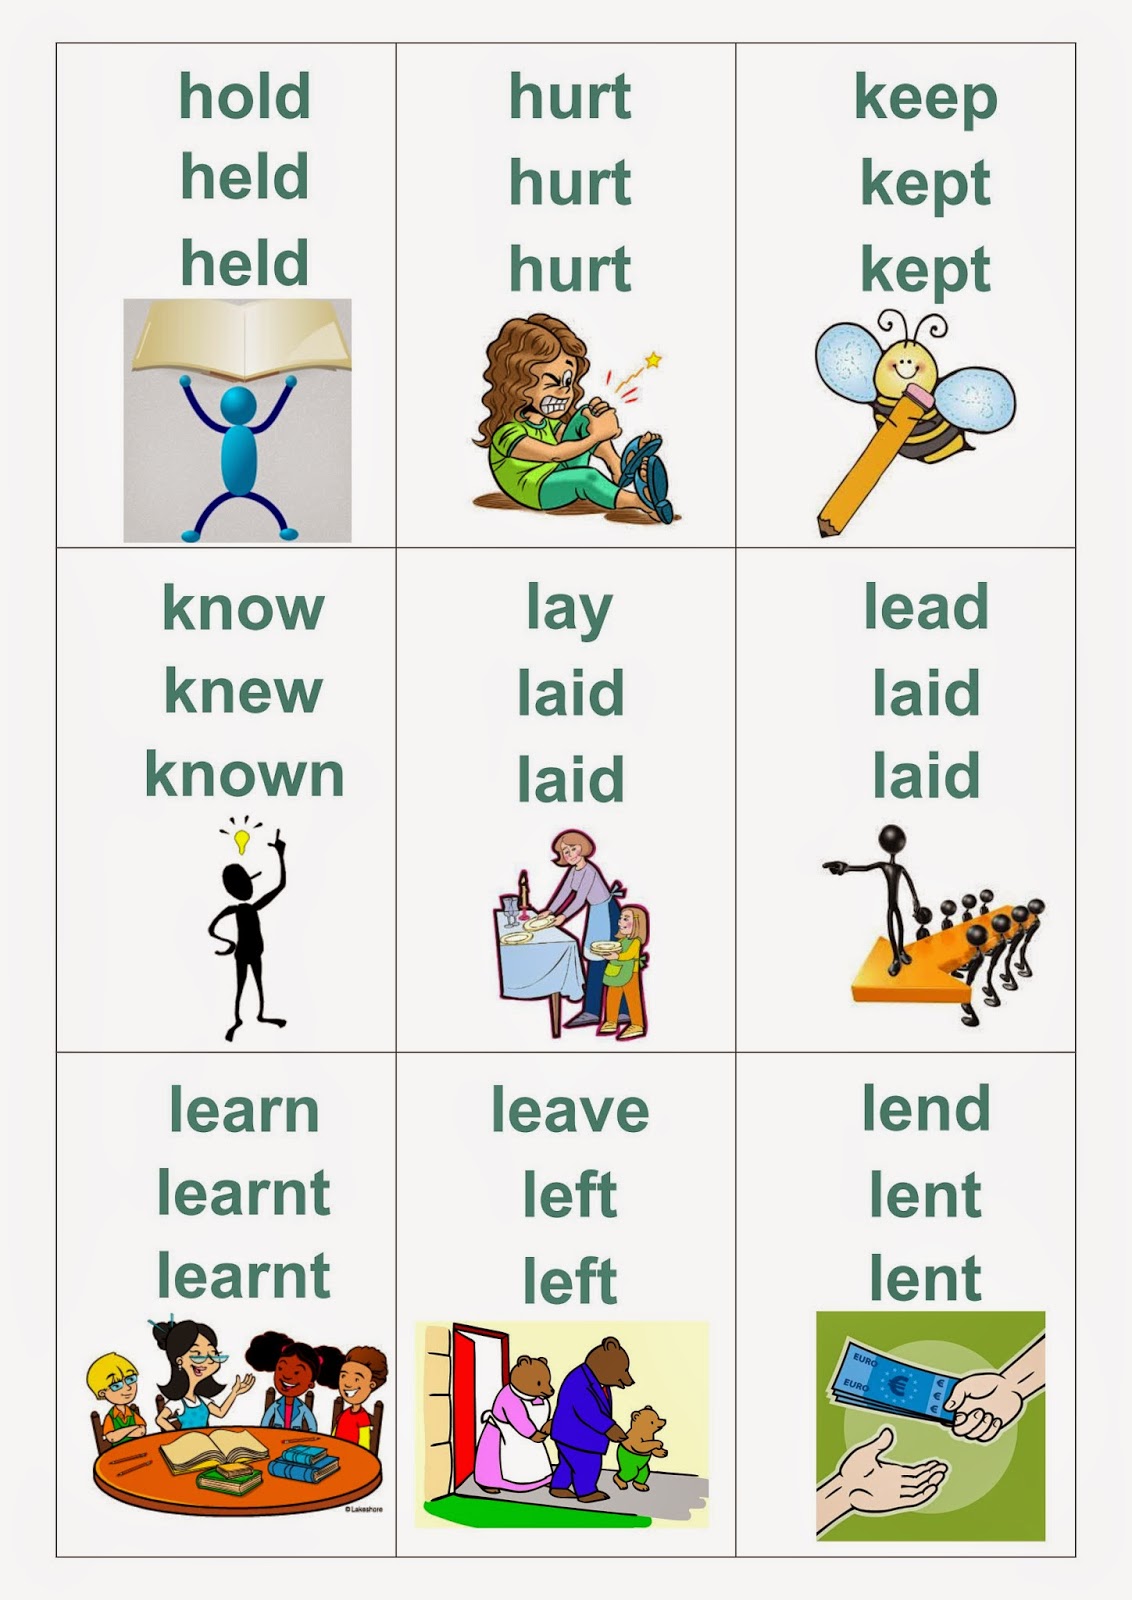 Изучаем английские глаголы. Карточки Irregular verbs на английском. Карточки по английскому неправильные глаголы. Карточки для изучения неправильных глаголов английского языка. Неправильные глаголы английского языка в картинках.